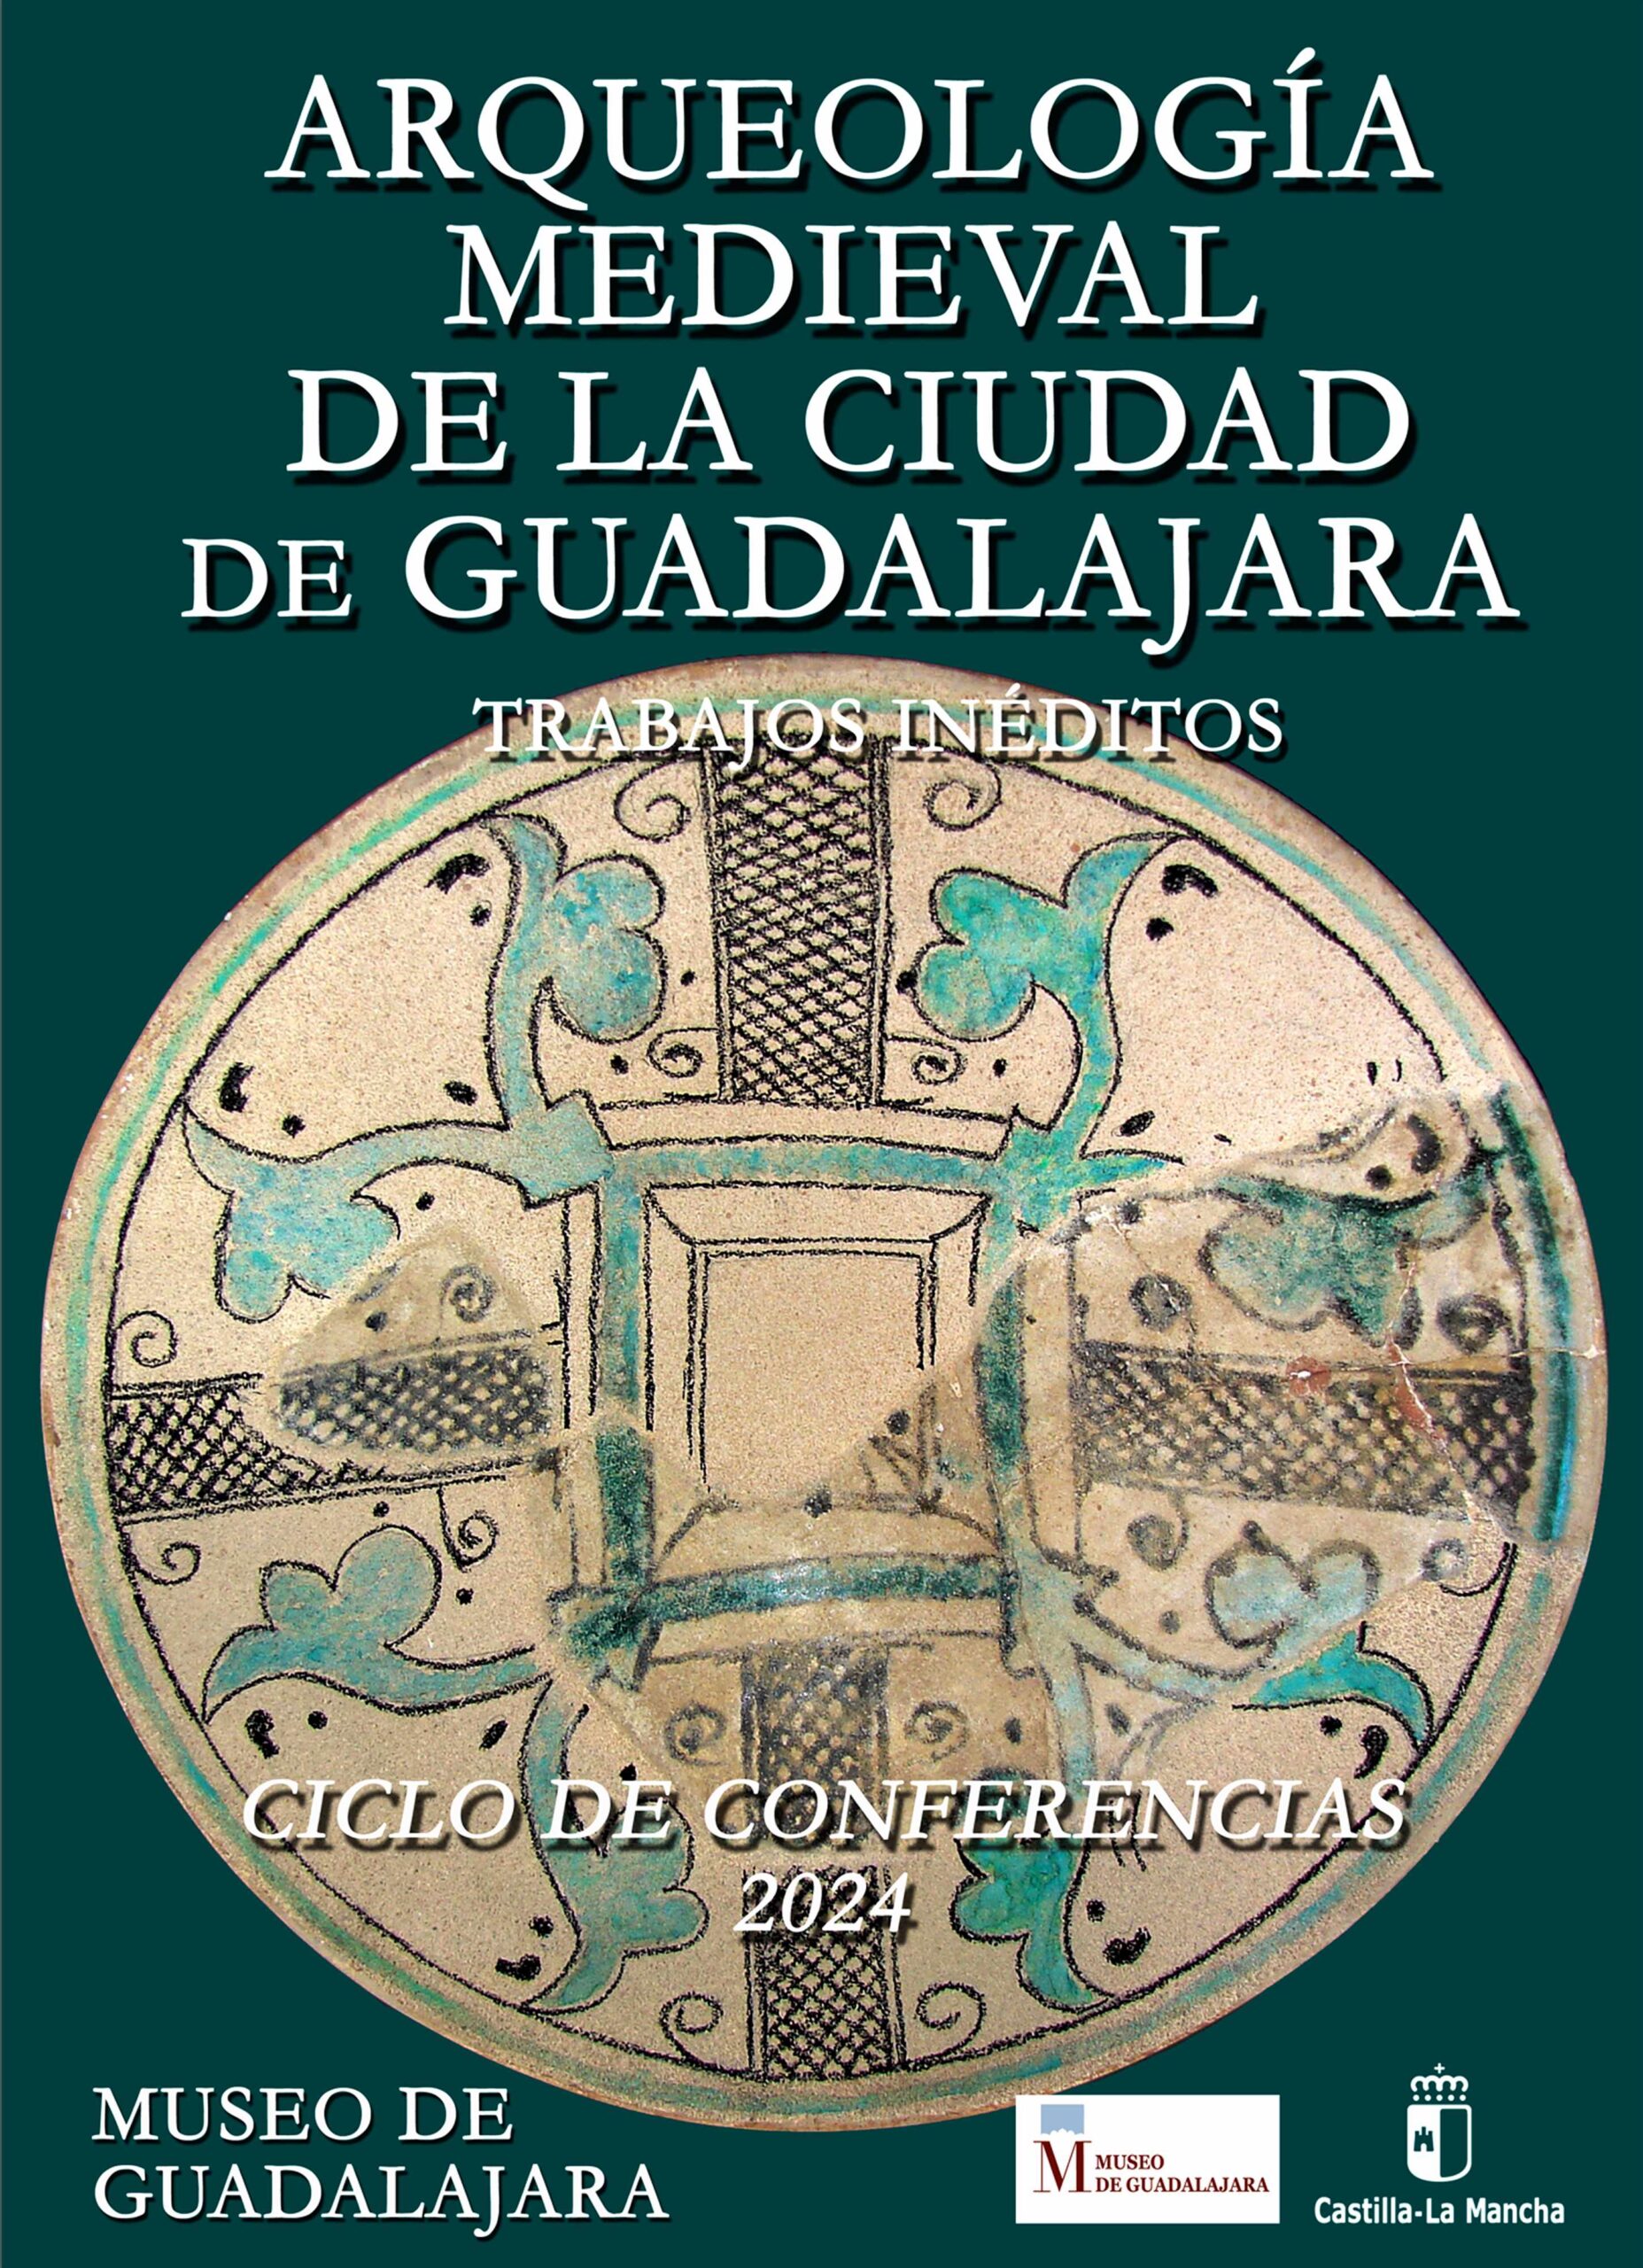 Explora las Raíces de Guadalajara: Ciclo de Conferencias Arqueológicas en el Museo Provincial